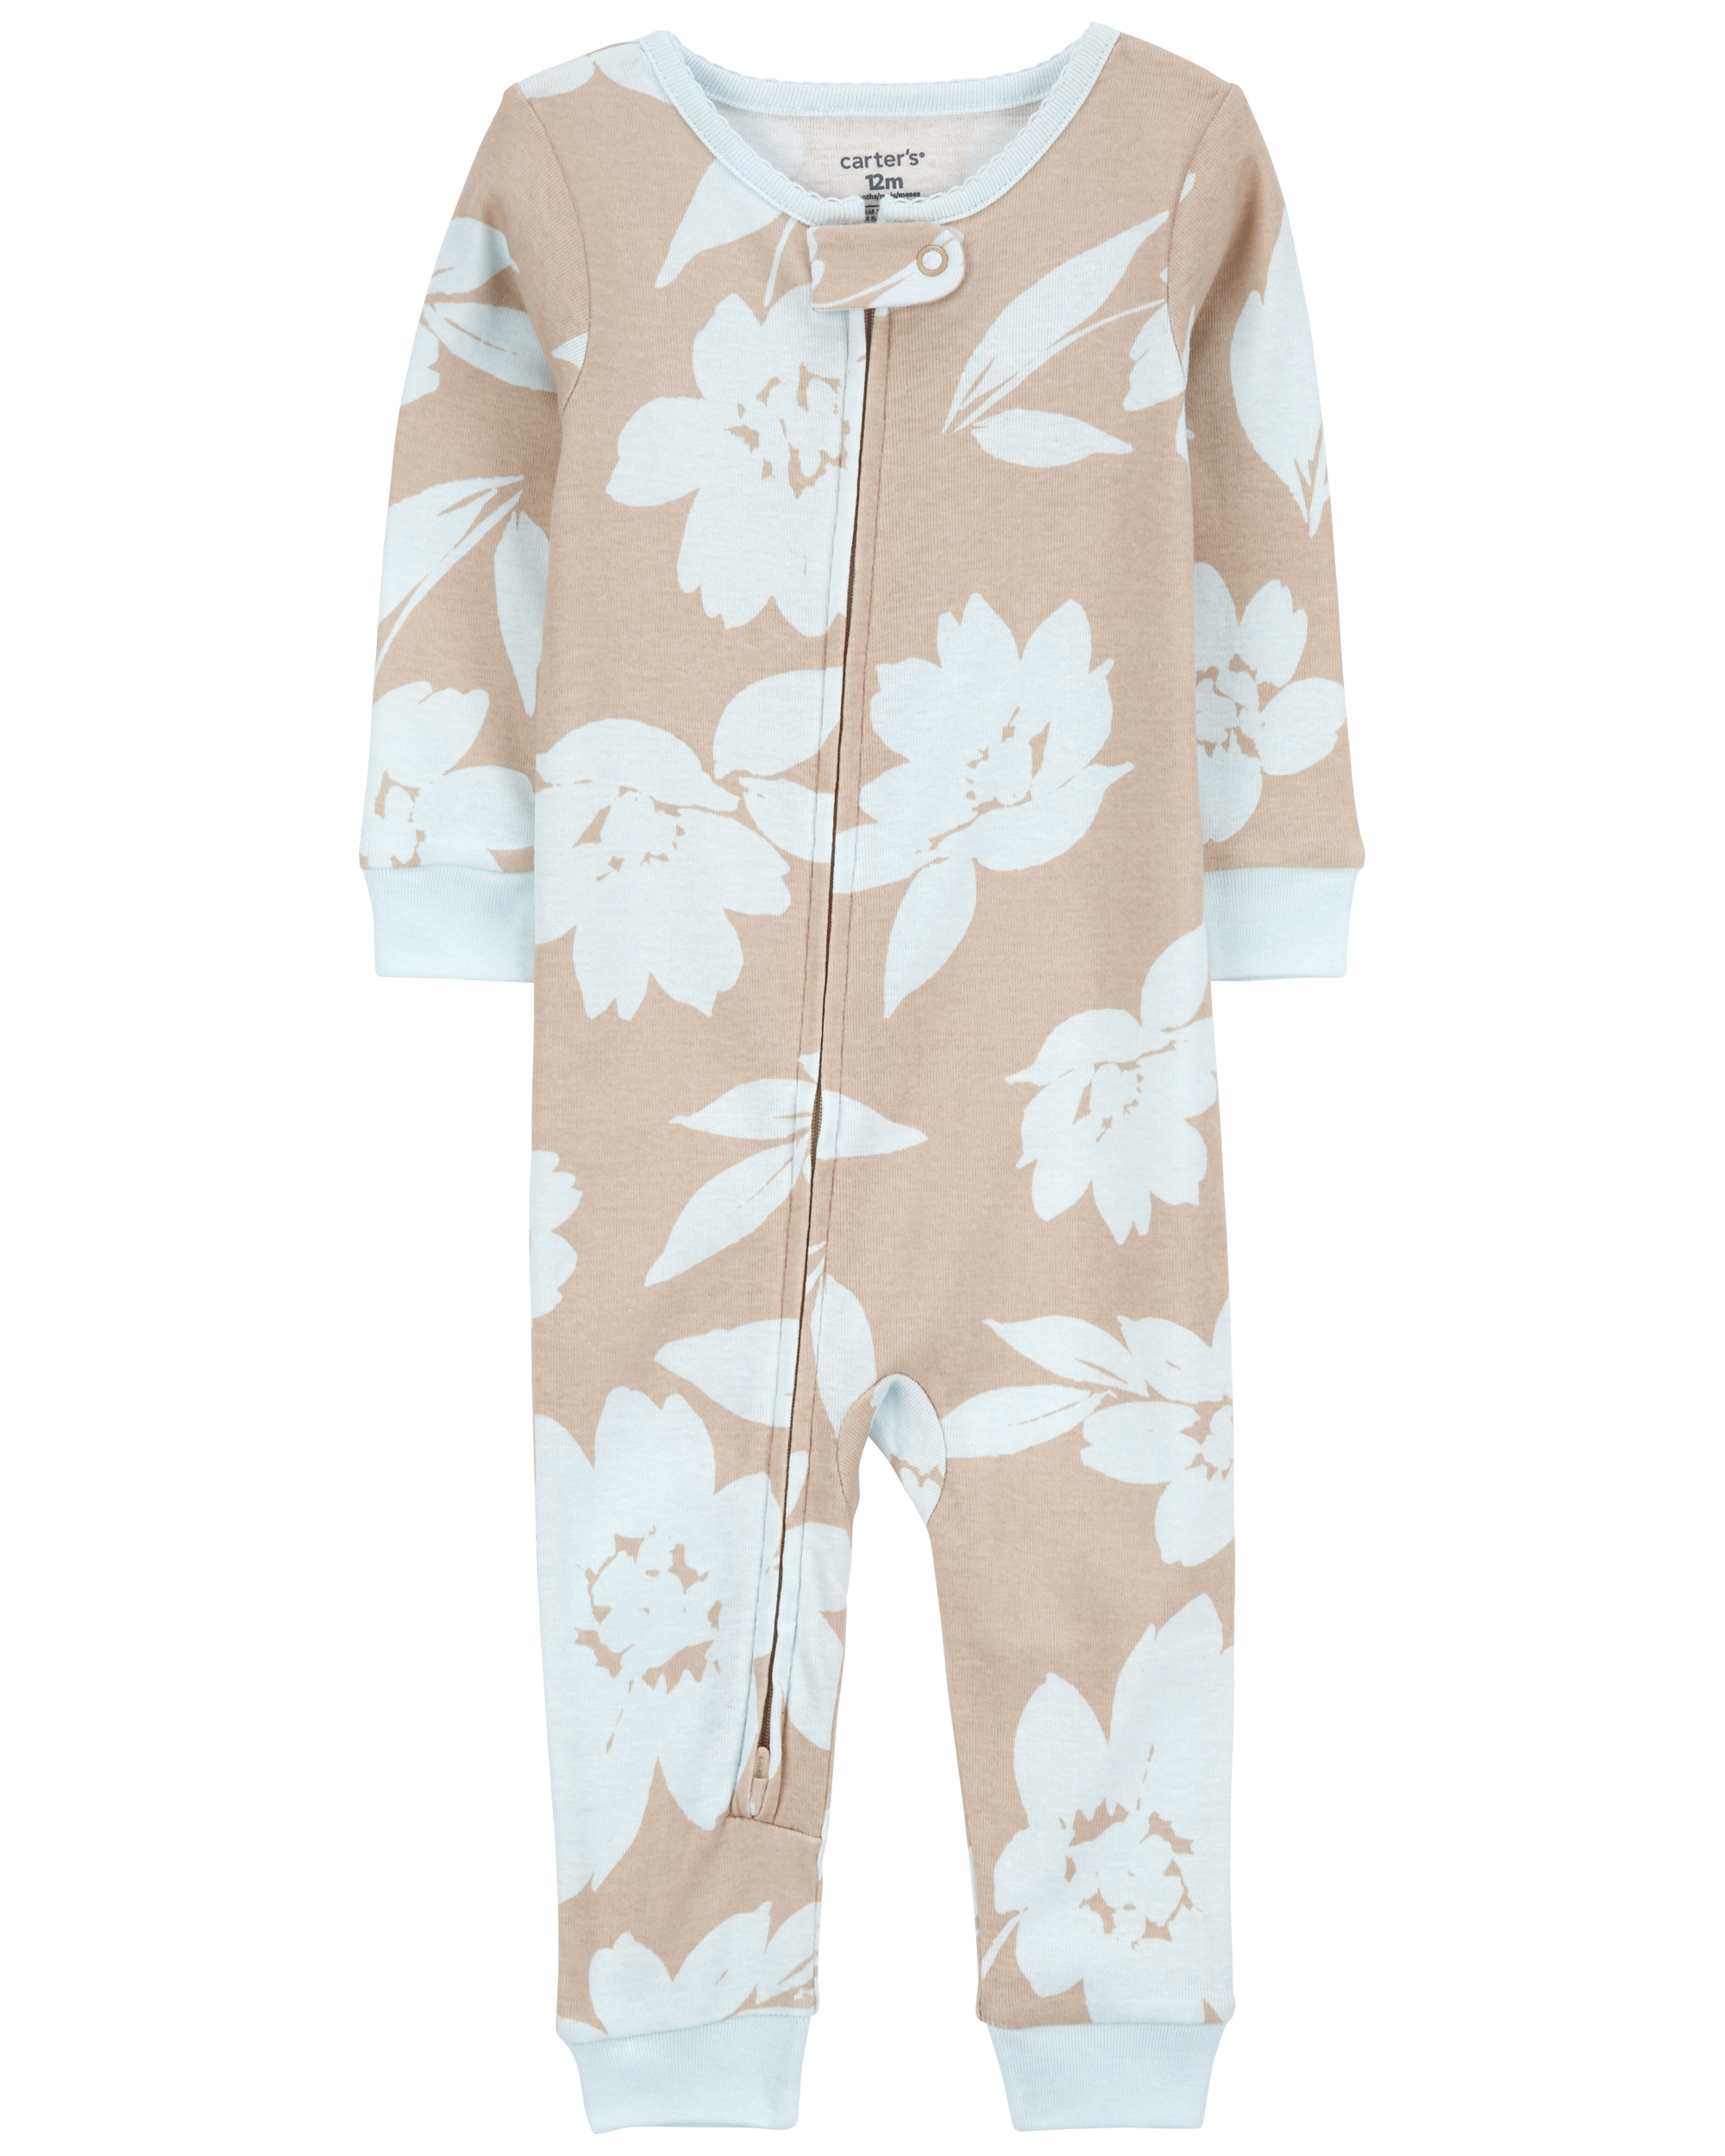 Toddler 1-Piece Floral 100% Snug Fit Cotton Footless Pyjamas